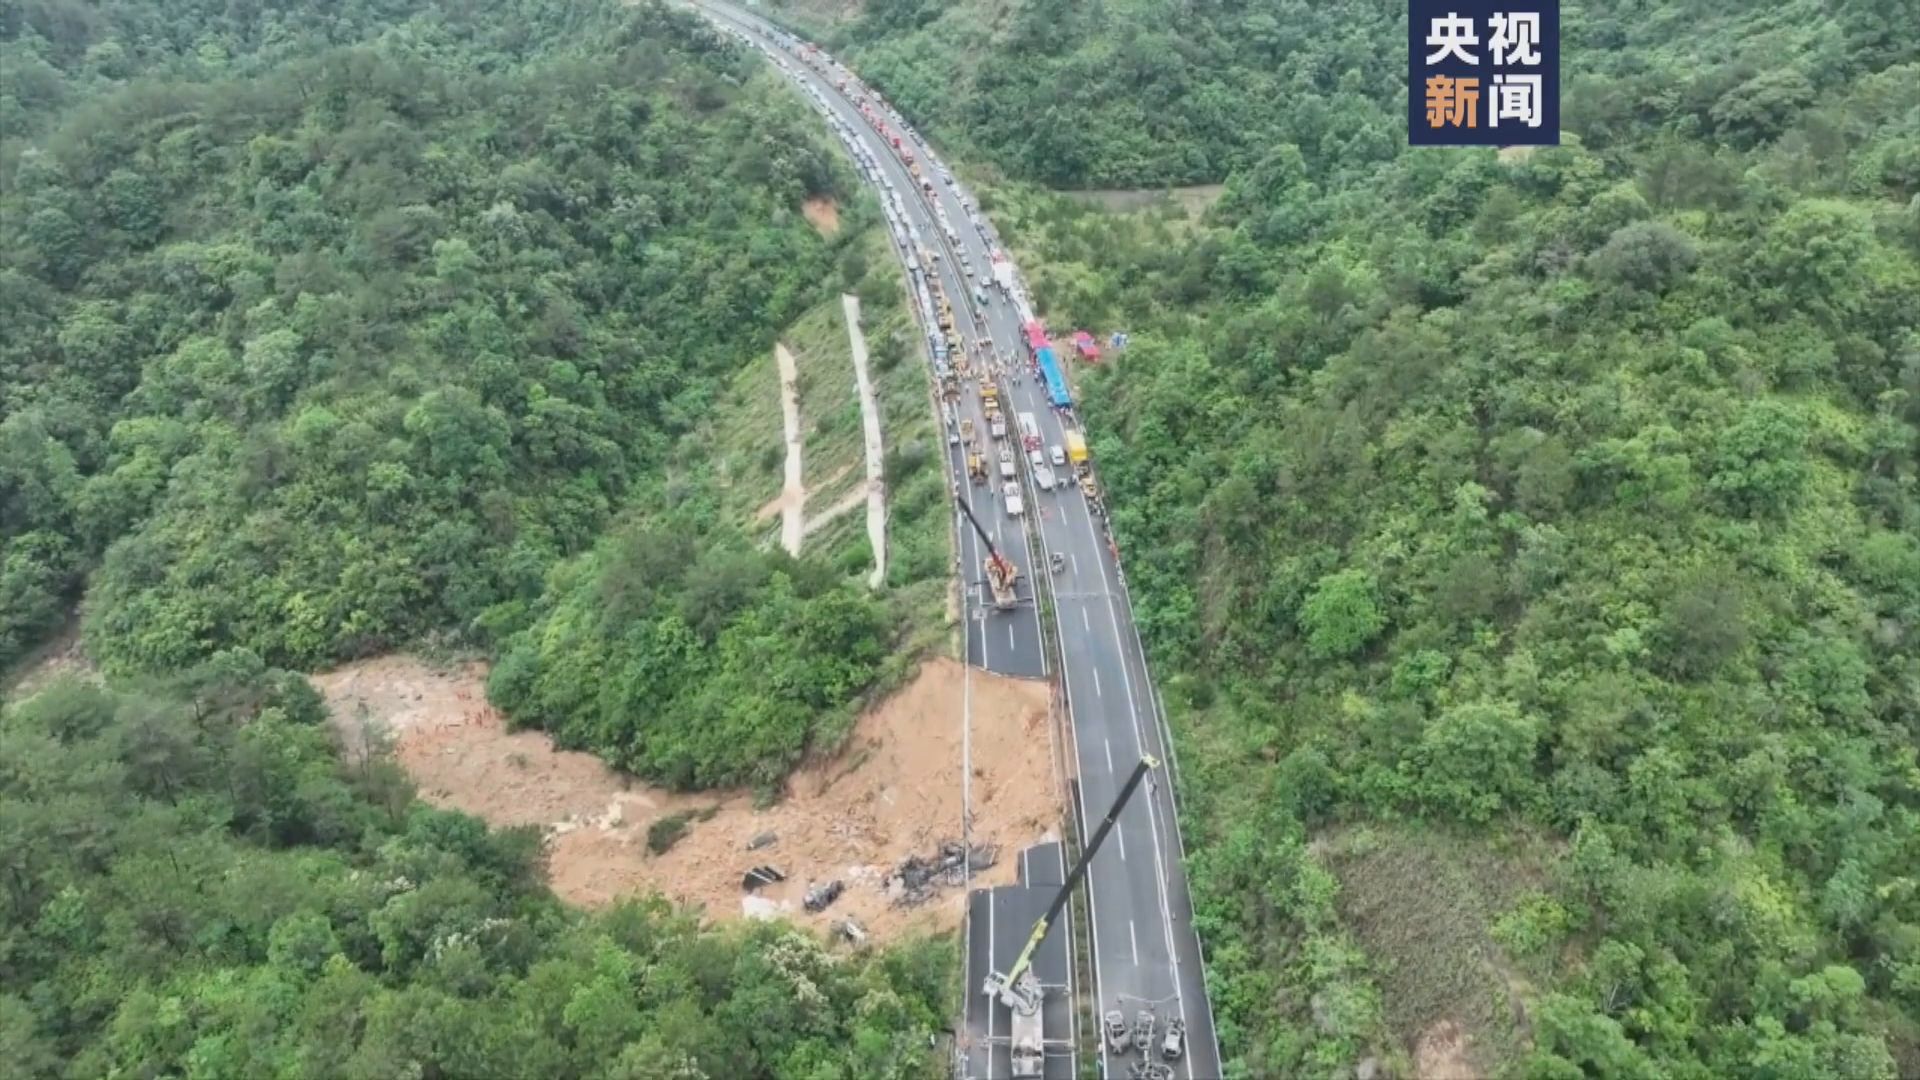 廣東梅龍高速路陷事故 最少24人死亡